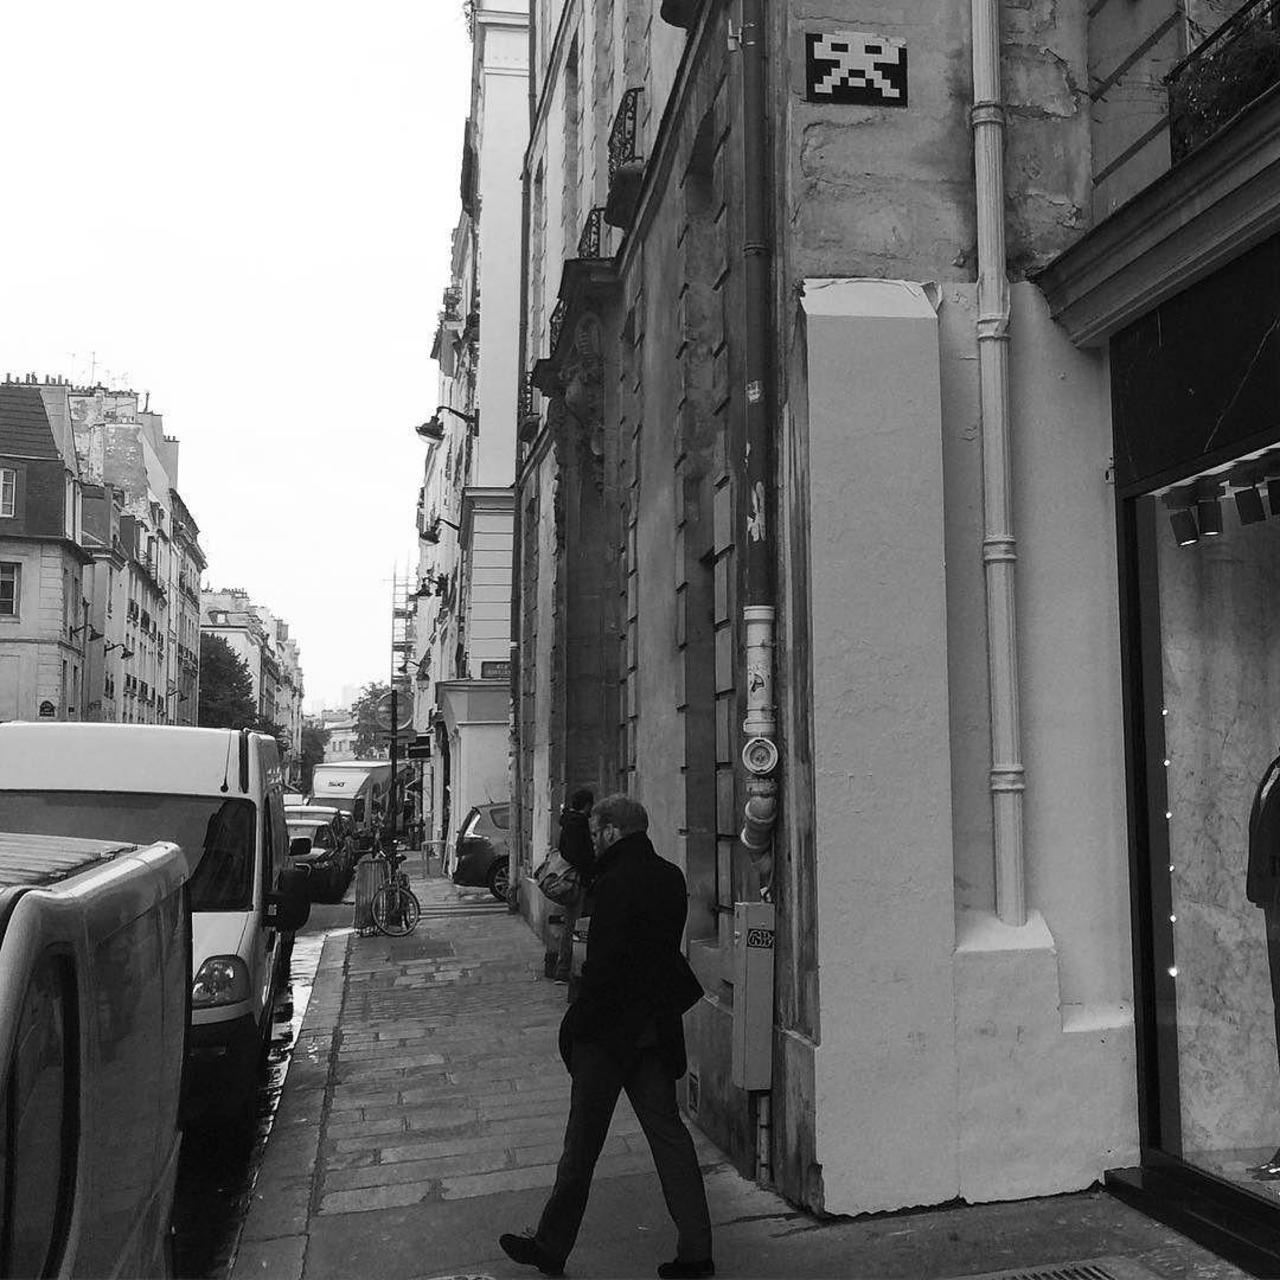 RT @circumjacent_fr: #Paris #graffiti photo by @julienvermeulen http://ift.tt/1RFRUWX #StreetArt http://t.co/oSr5TGHiw2